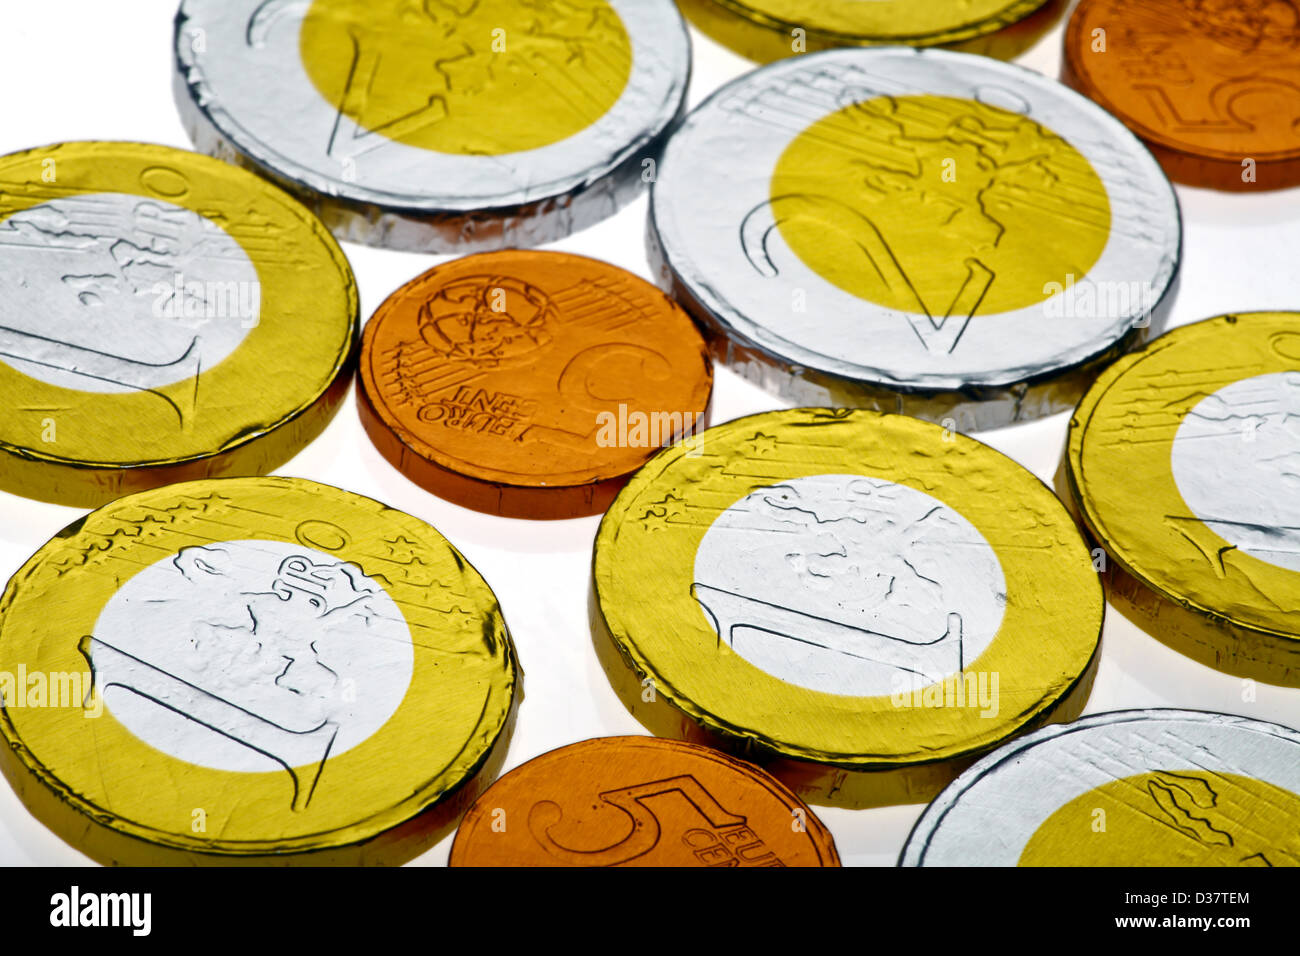 Tres Productos De Chocolate En Forma De Monedas De Euro, Estados Unidos Y  Japón Se Encuentran Sobre Un Fondo De Plástico Naranja. Un Modelo De  Monedas En Efectivo En Forma Comestible. Fotos